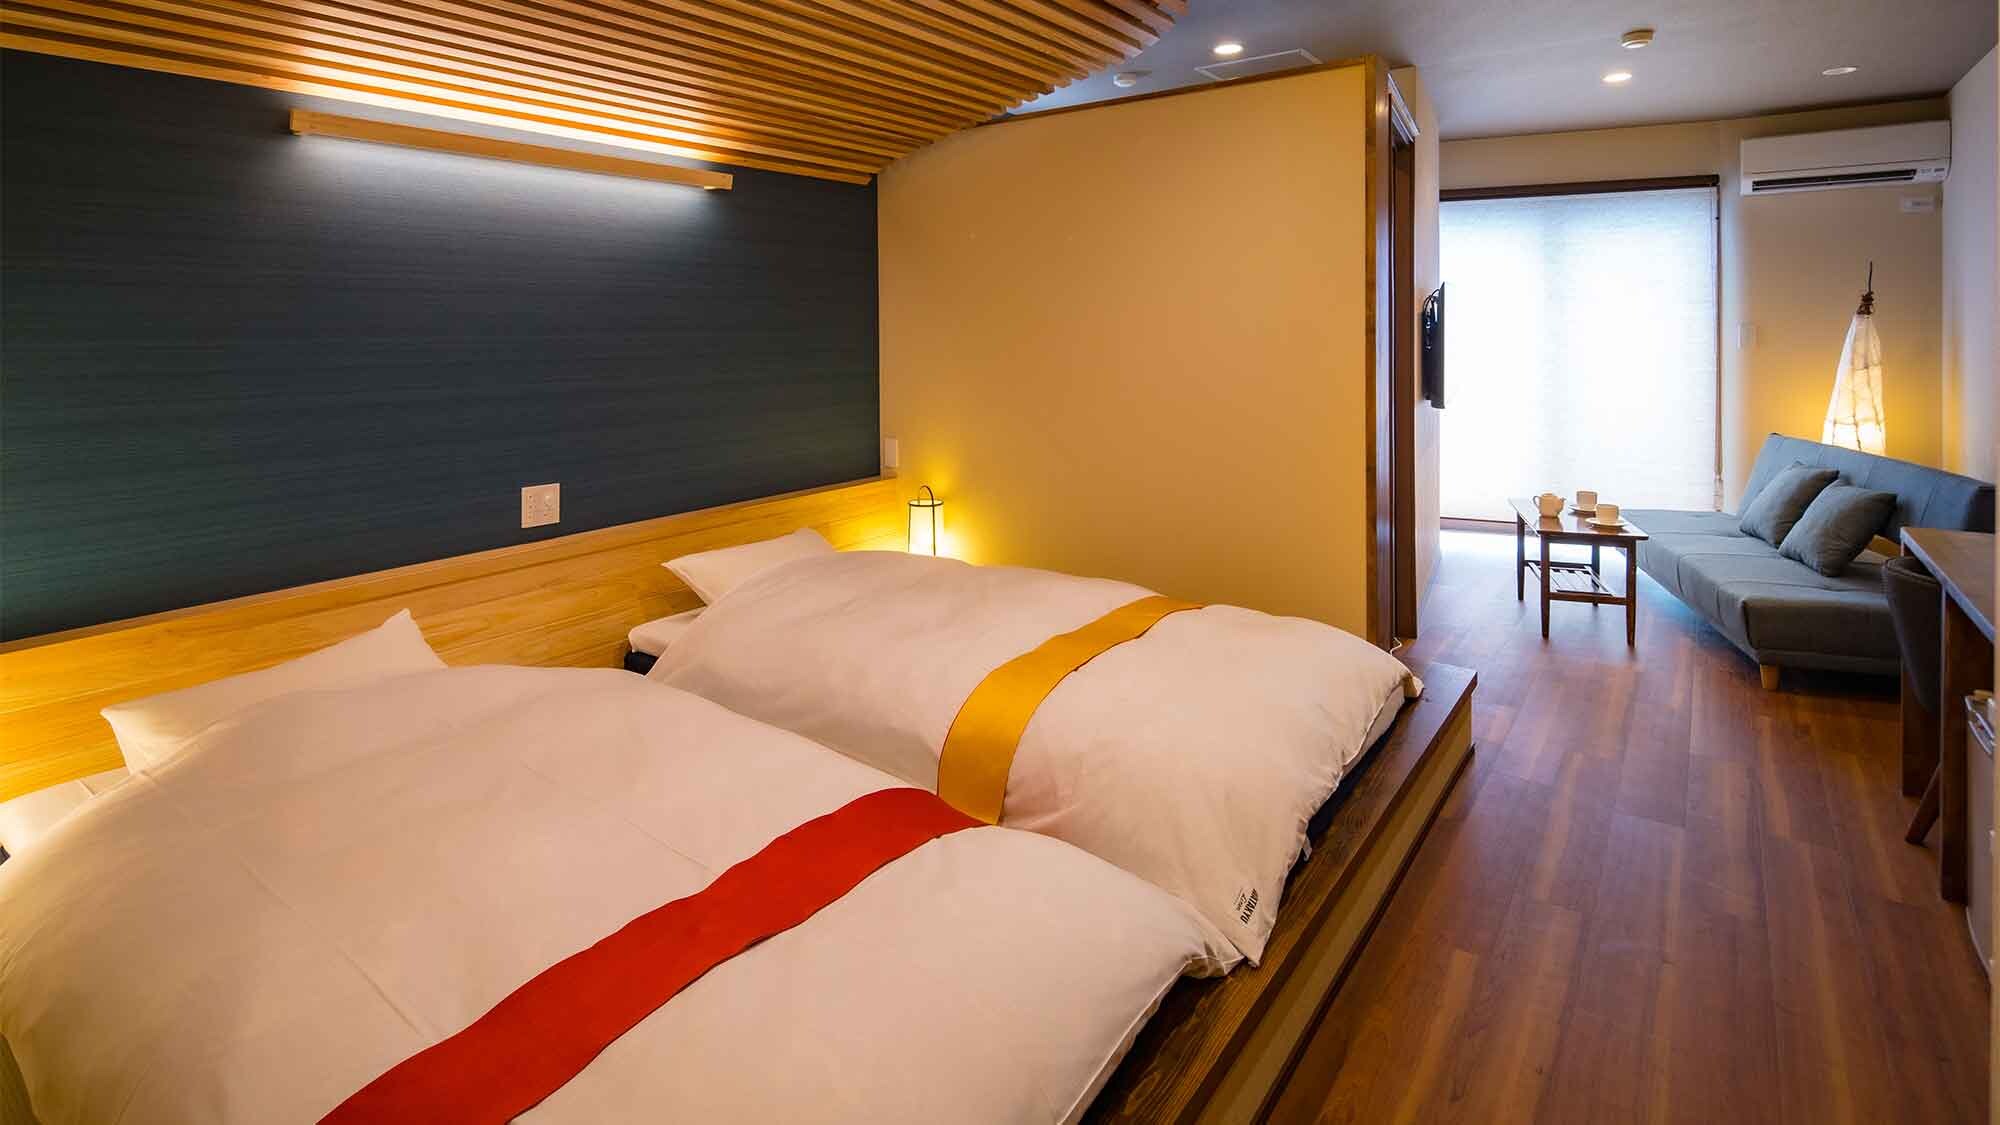 ・[ตัวอย่างห้องสไตล์ญี่ปุ่นพร้อมอ่างอาบน้ำพร้อมวิว] มีฟูกนอนในพื้นที่ปูด้วยเสื่อทาทามิแบบริวกิว